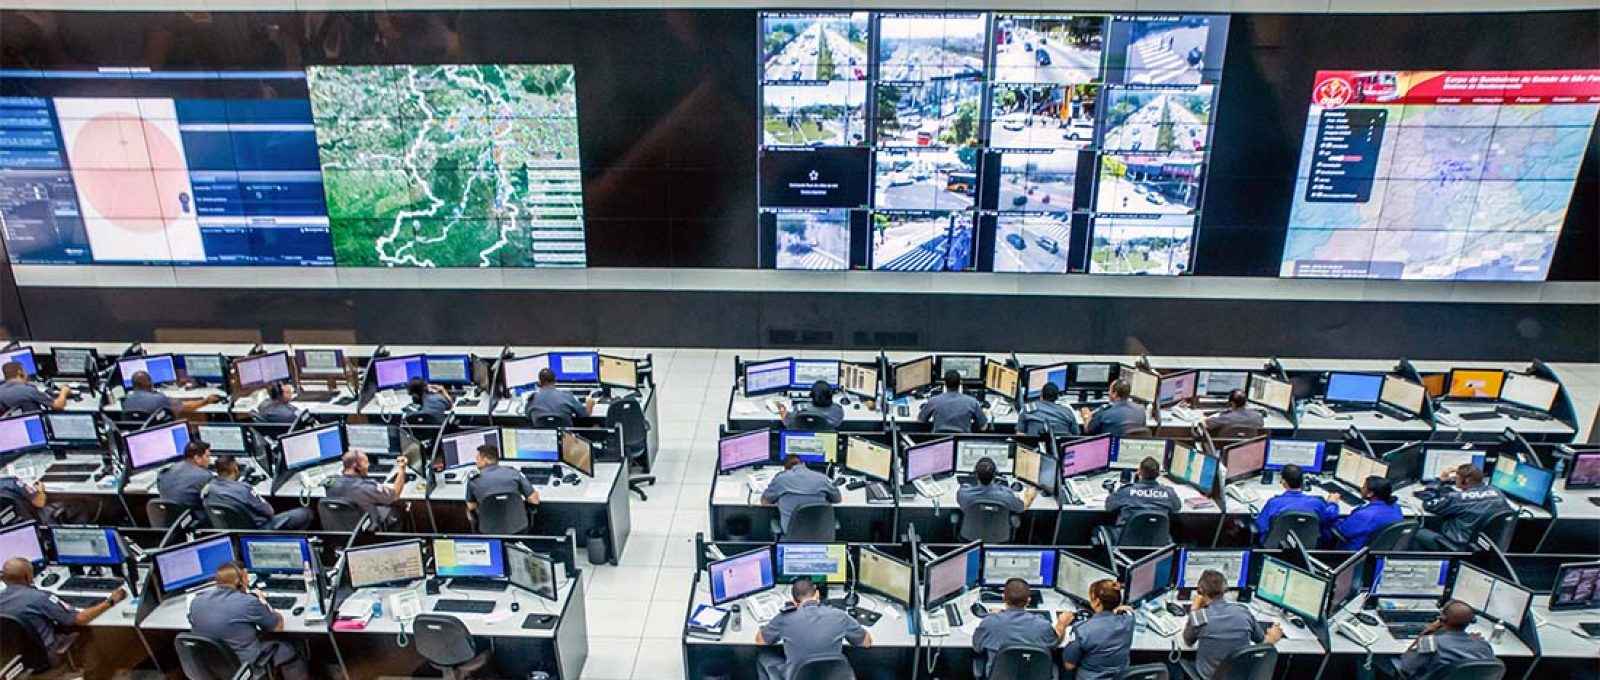 Sistema Detecta na sede do COPOM – Centro de Operações da Polícia Militar (saopaulo.sp.gov.br).